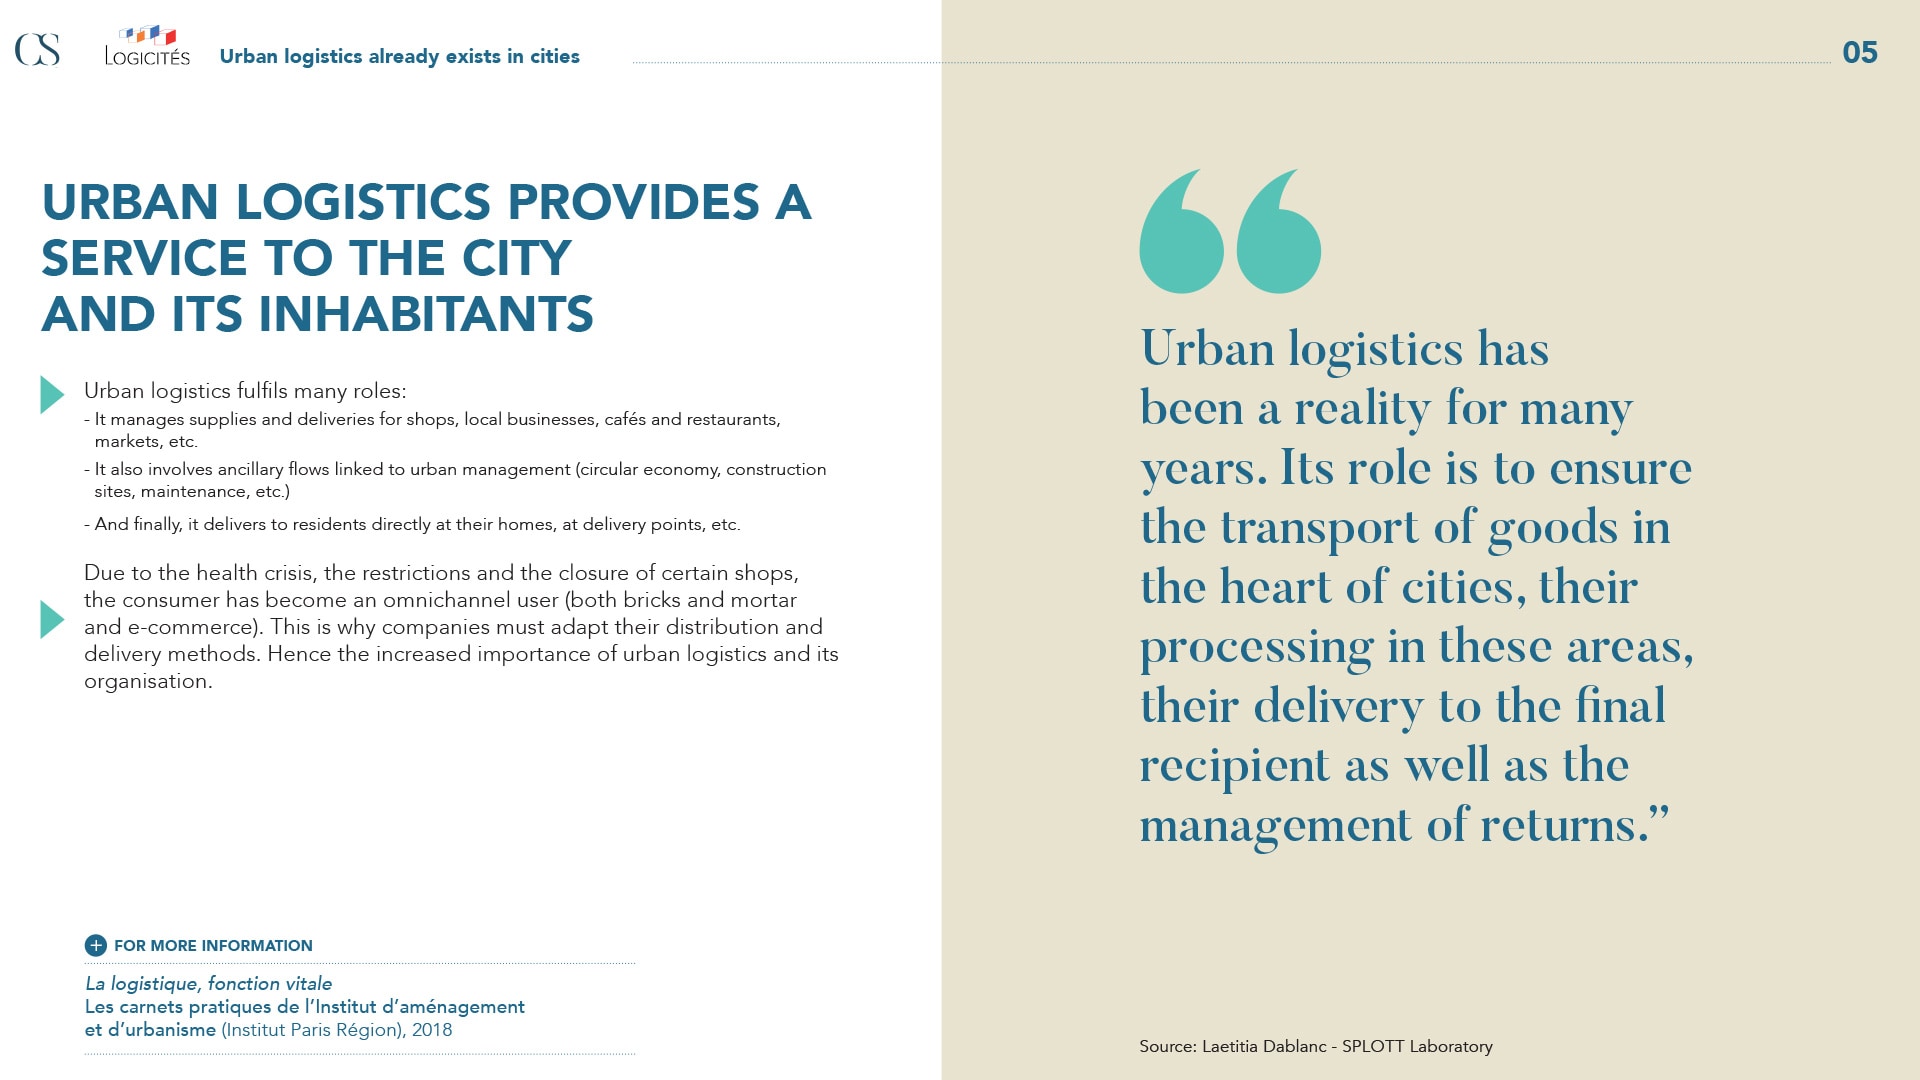 La logistique urbaine, un service à la ville et à ses habitants